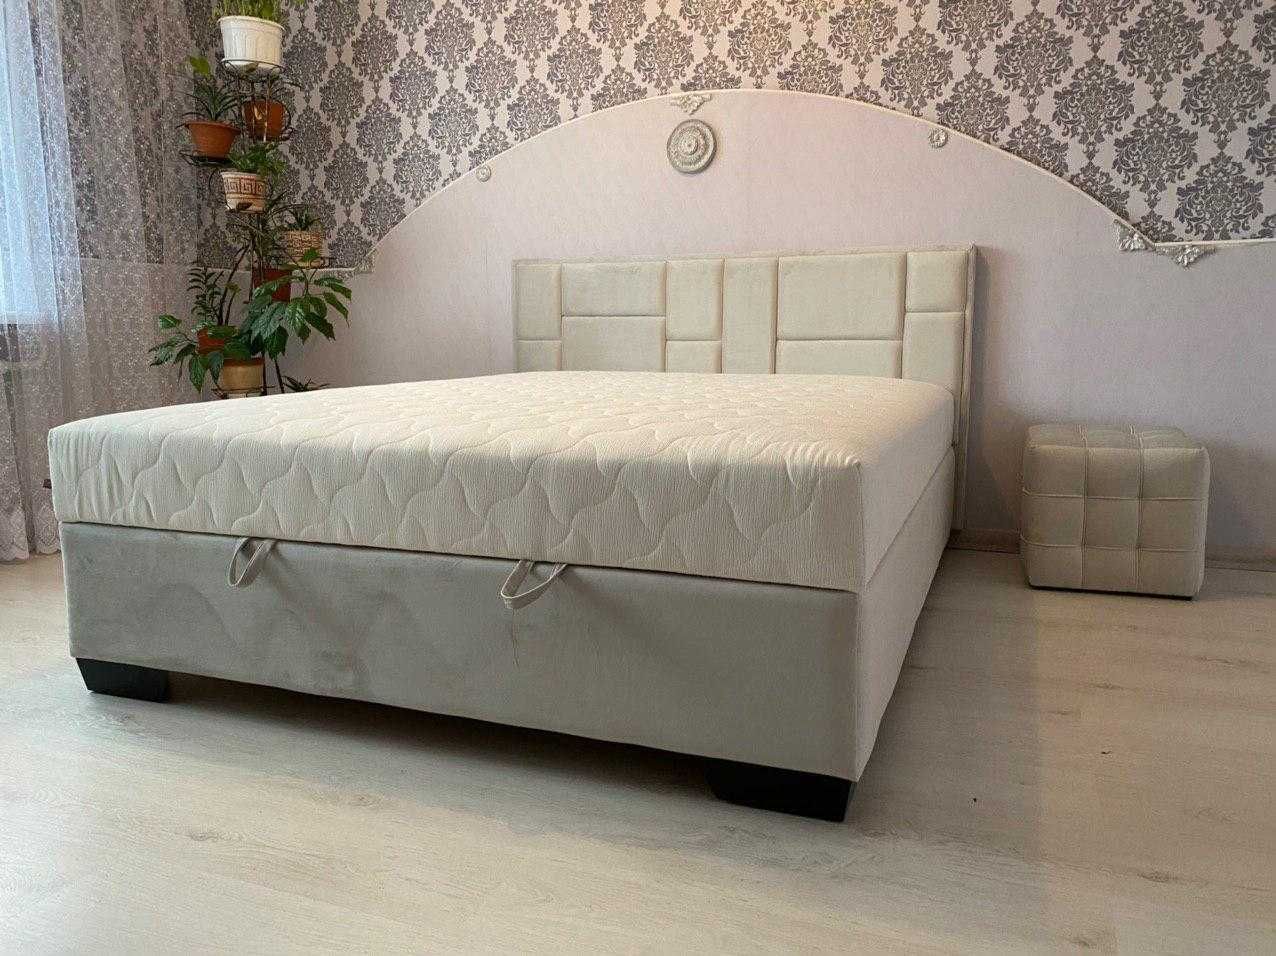 Ліжко Емоушн в комплекті з матрацом 160*200  в наявностів м. Рівне